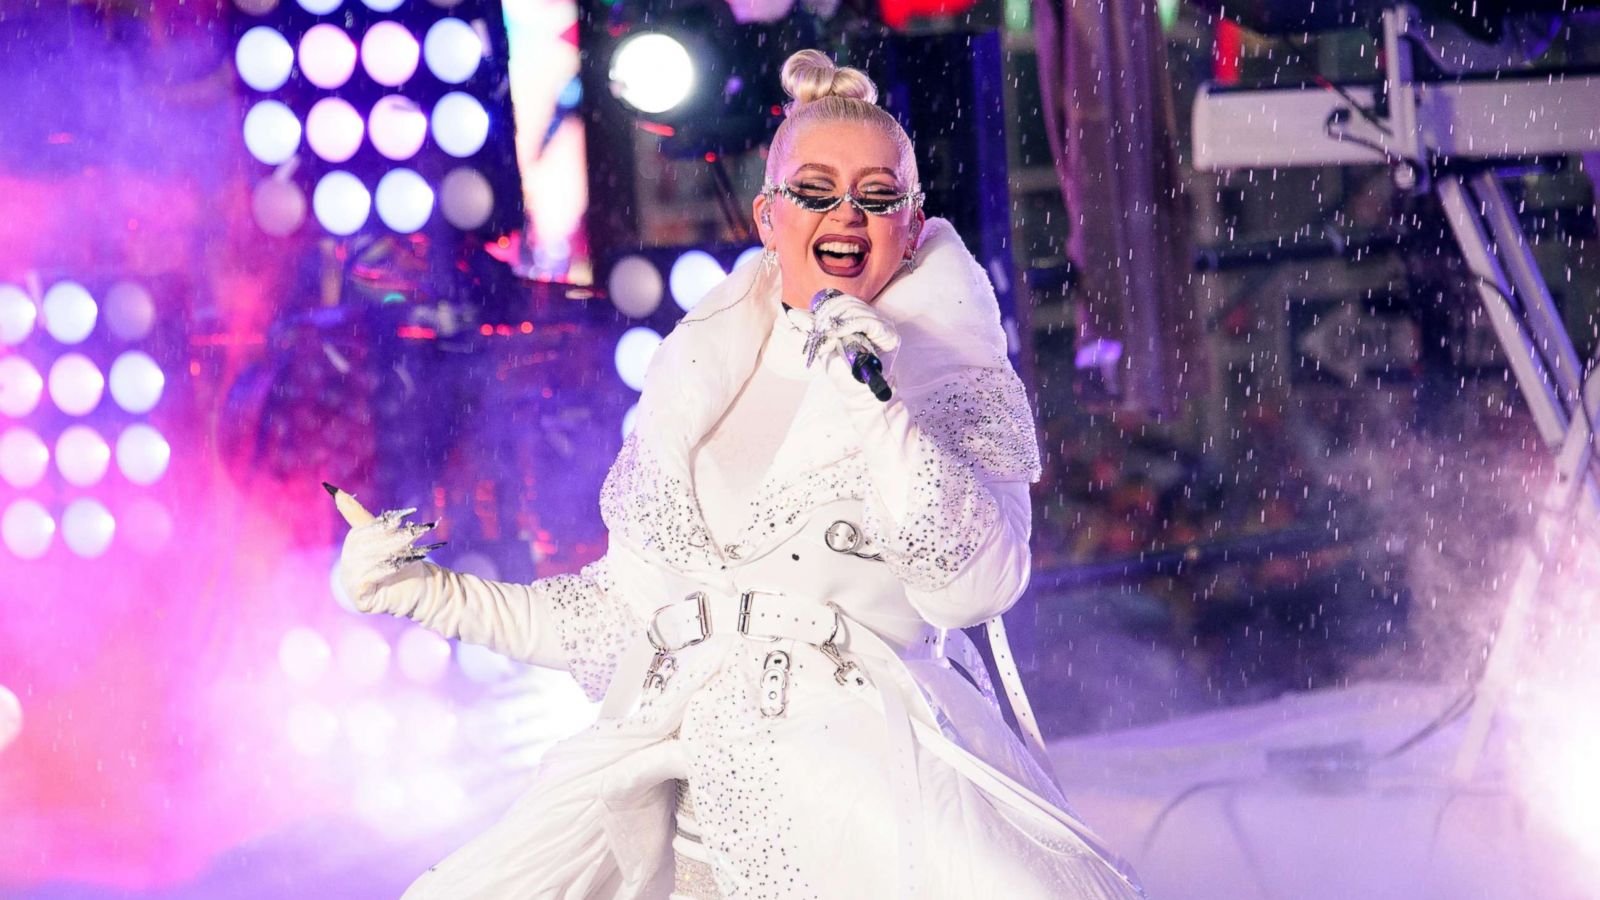 Christina Aguilera announces 'intimate' Las Vegas residency